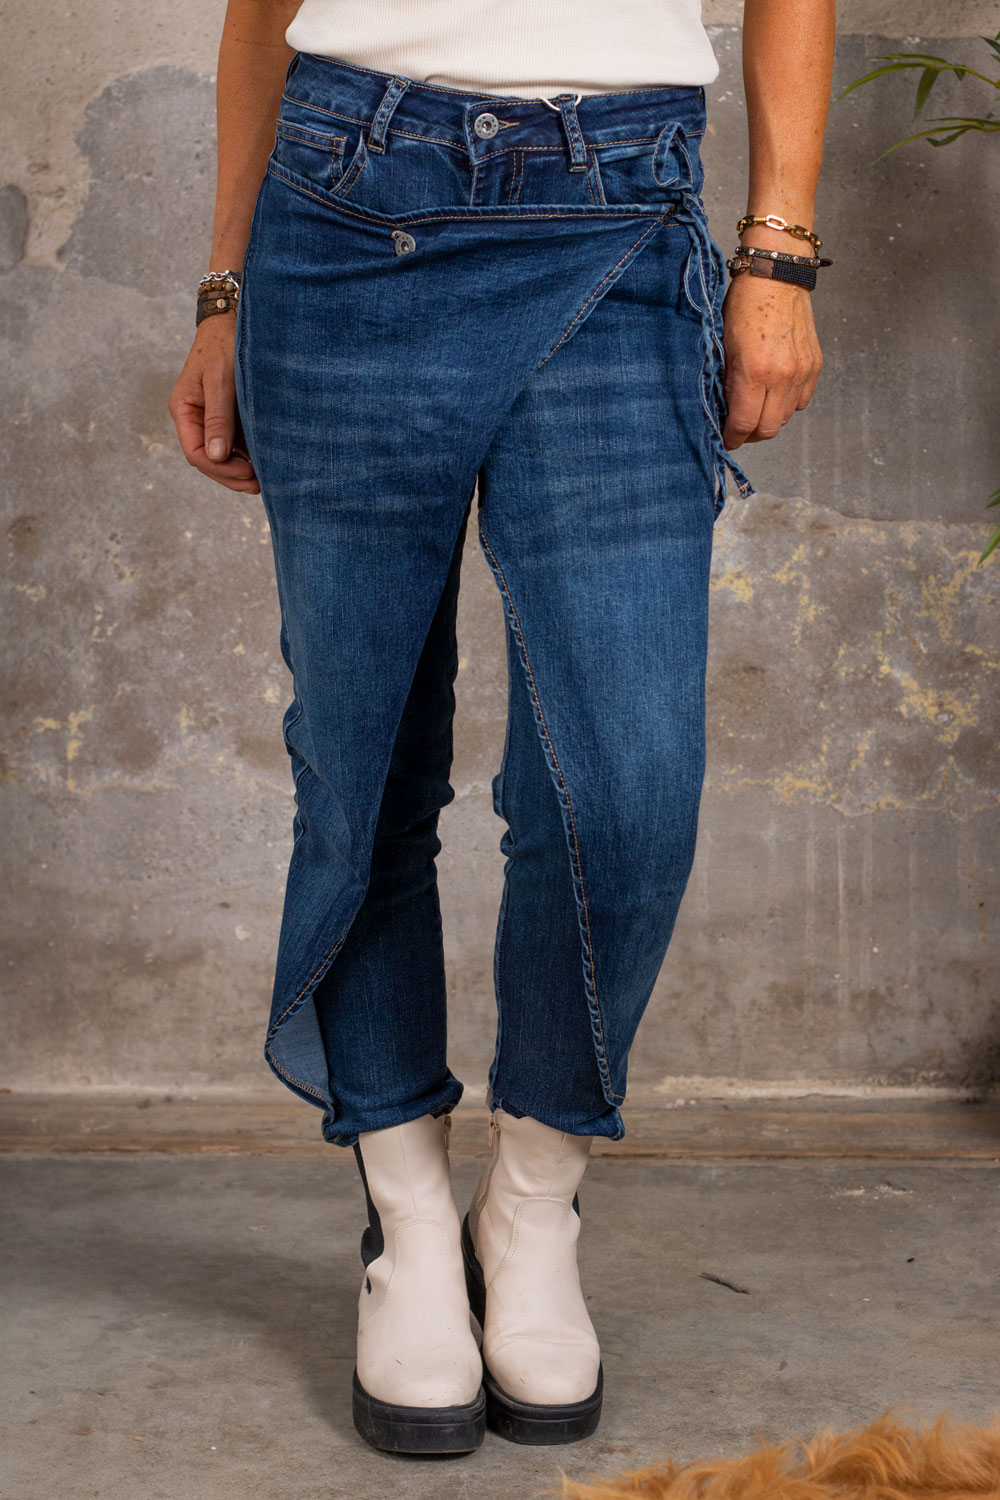 Jeans with Wrap - F058 - Denim